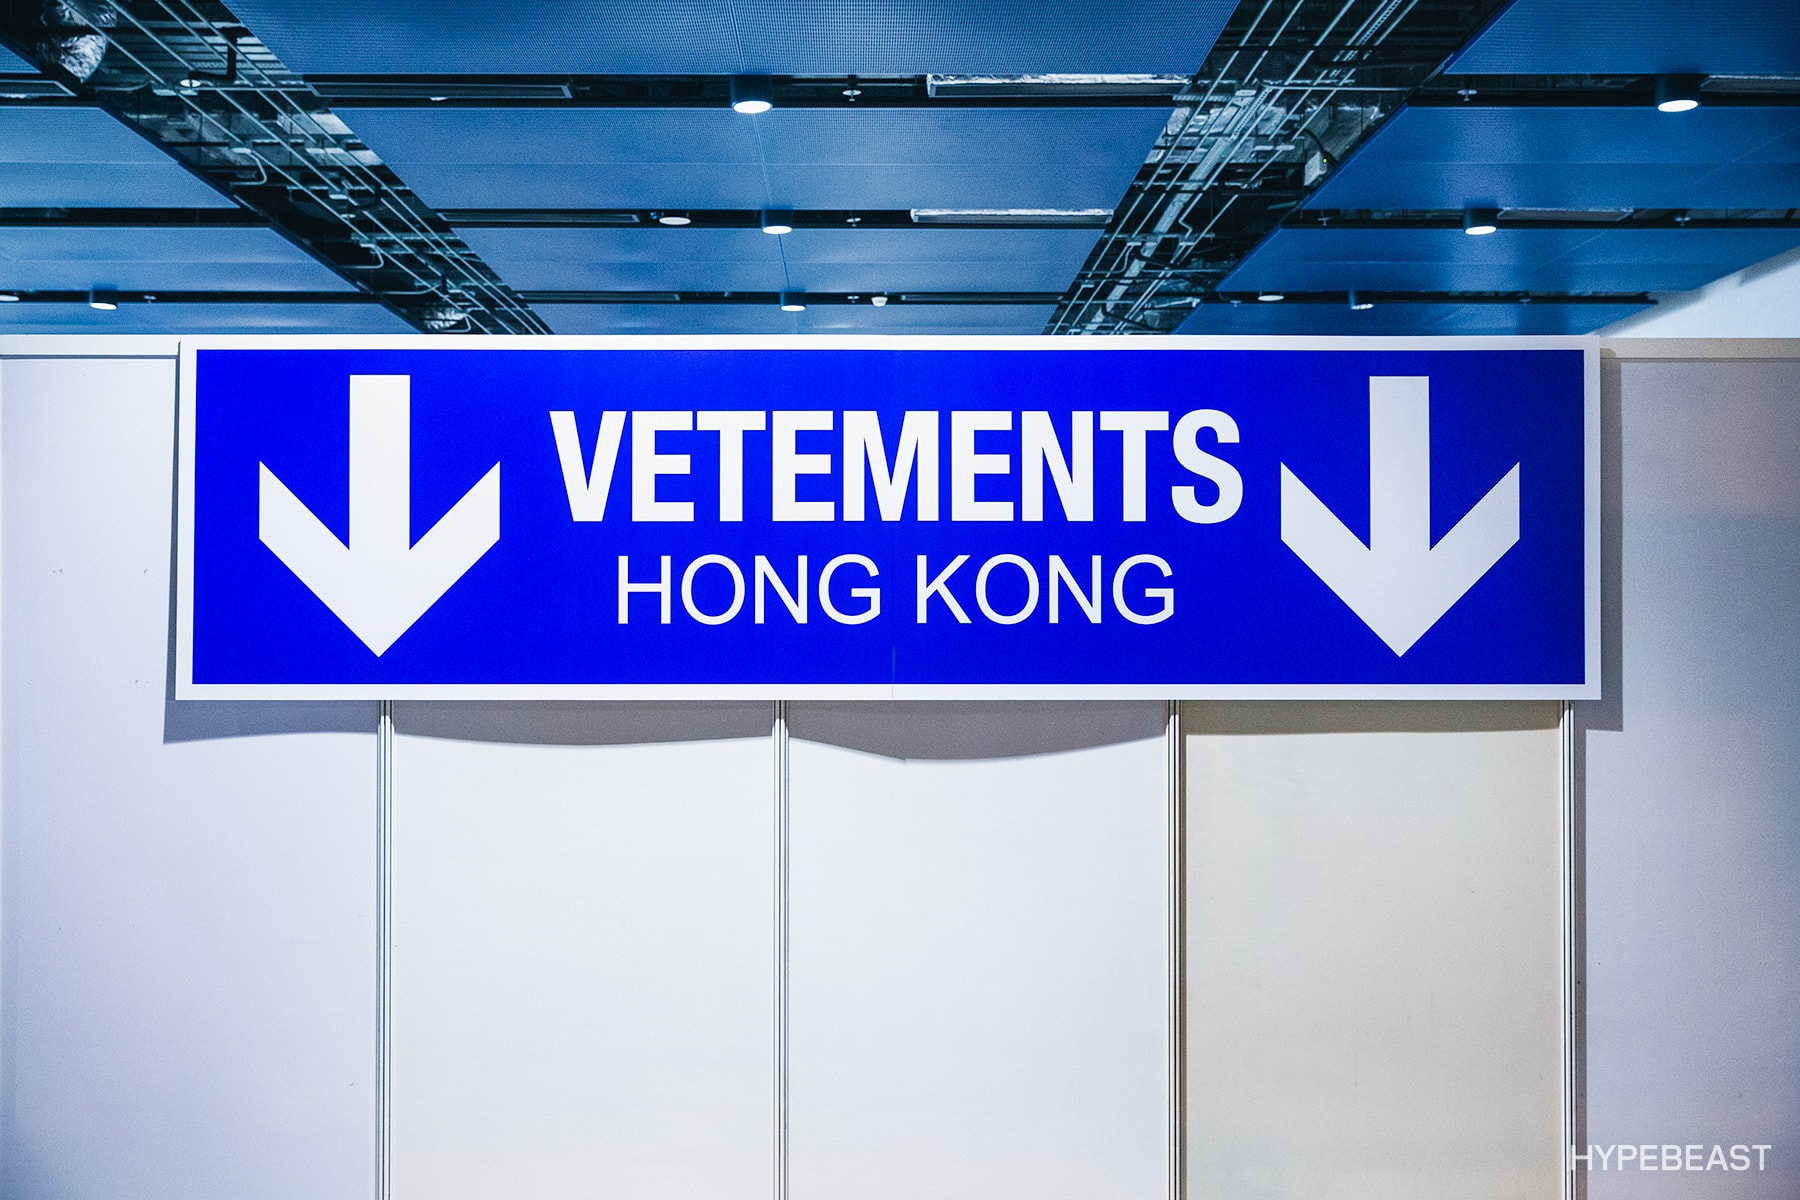 現場直擊 VETEMENTS 香港一天突擊期間限定店